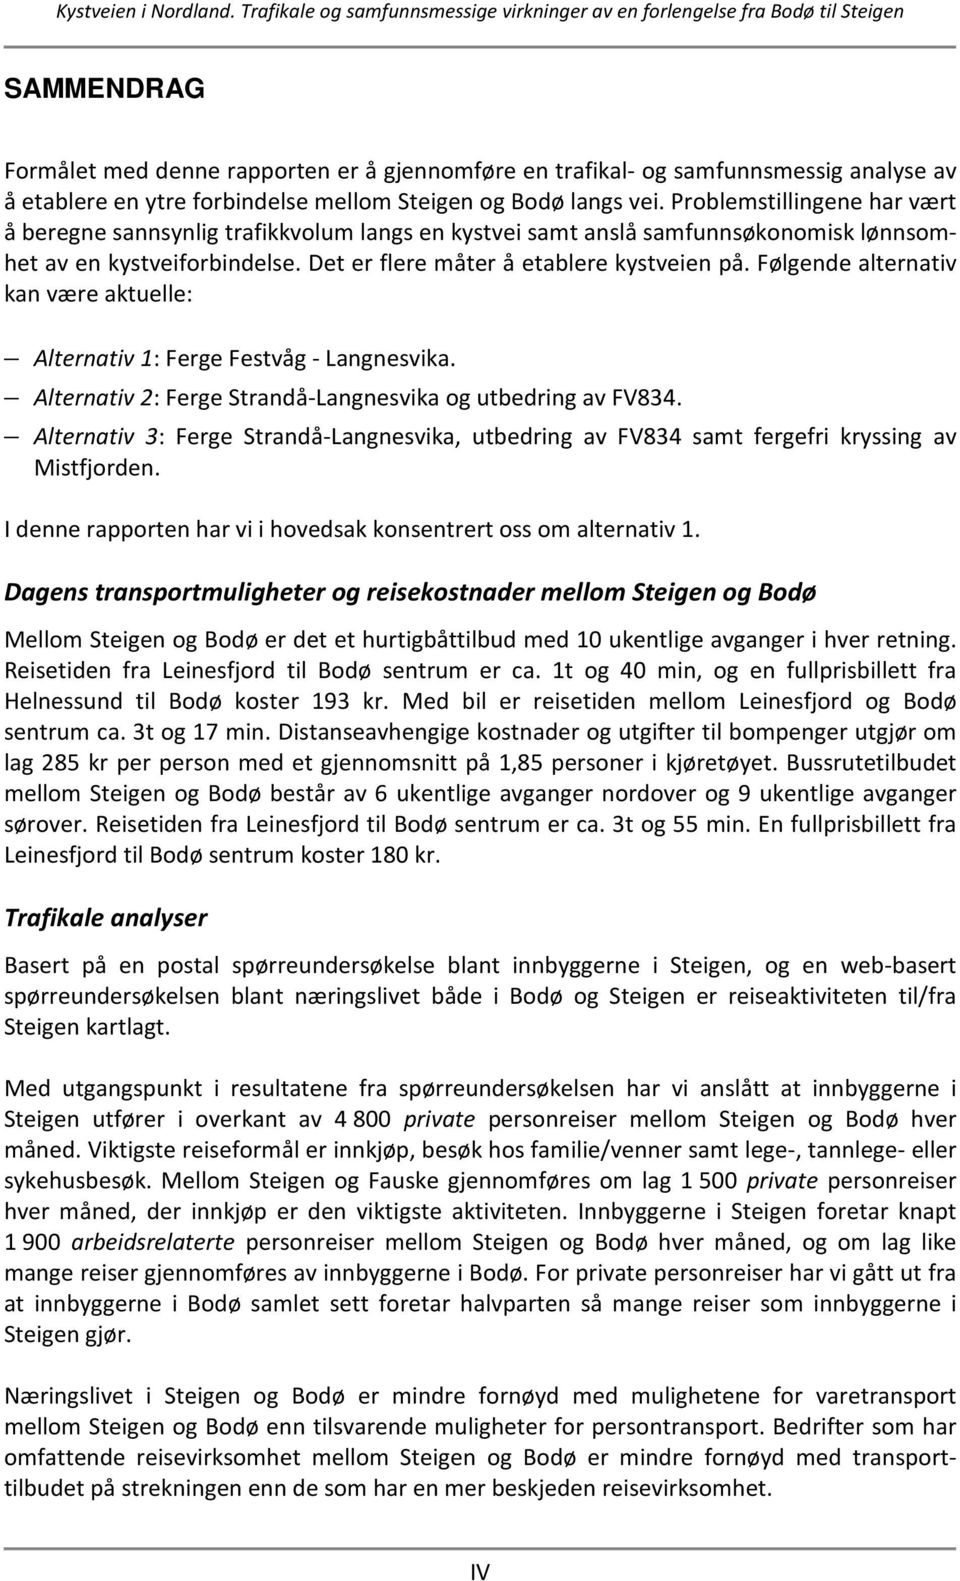 Følgende alternativ kan være aktuelle: Alternativ 1: Ferge Festvåg - Langnesvika. Alternativ 2: Ferge Strandå-Langnesvika og utbedring av FV834.